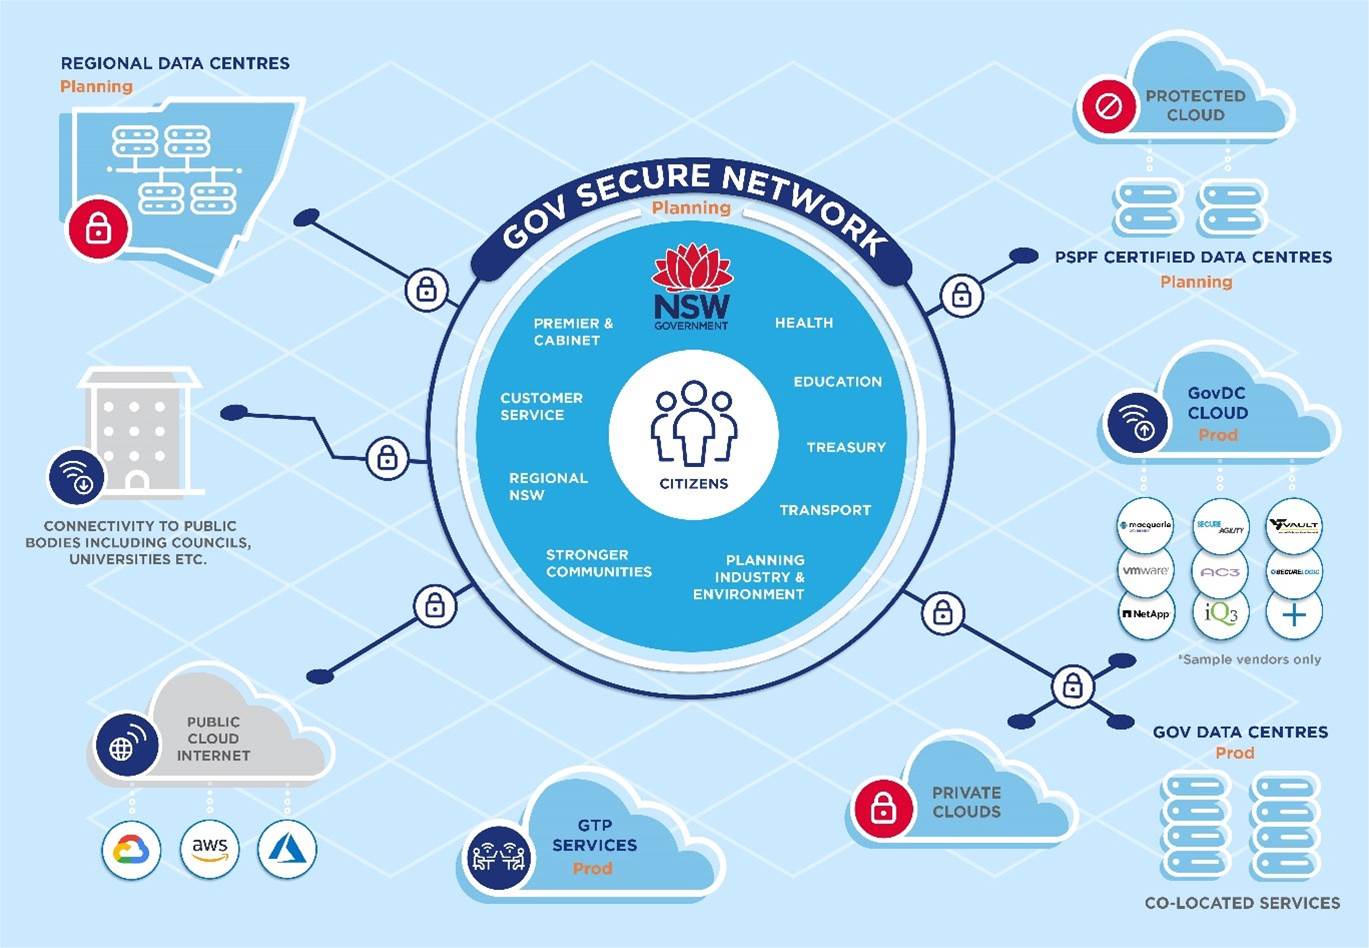 NSW govt to pilot secure network for GovDC, public cloud – Strategy – Cloud